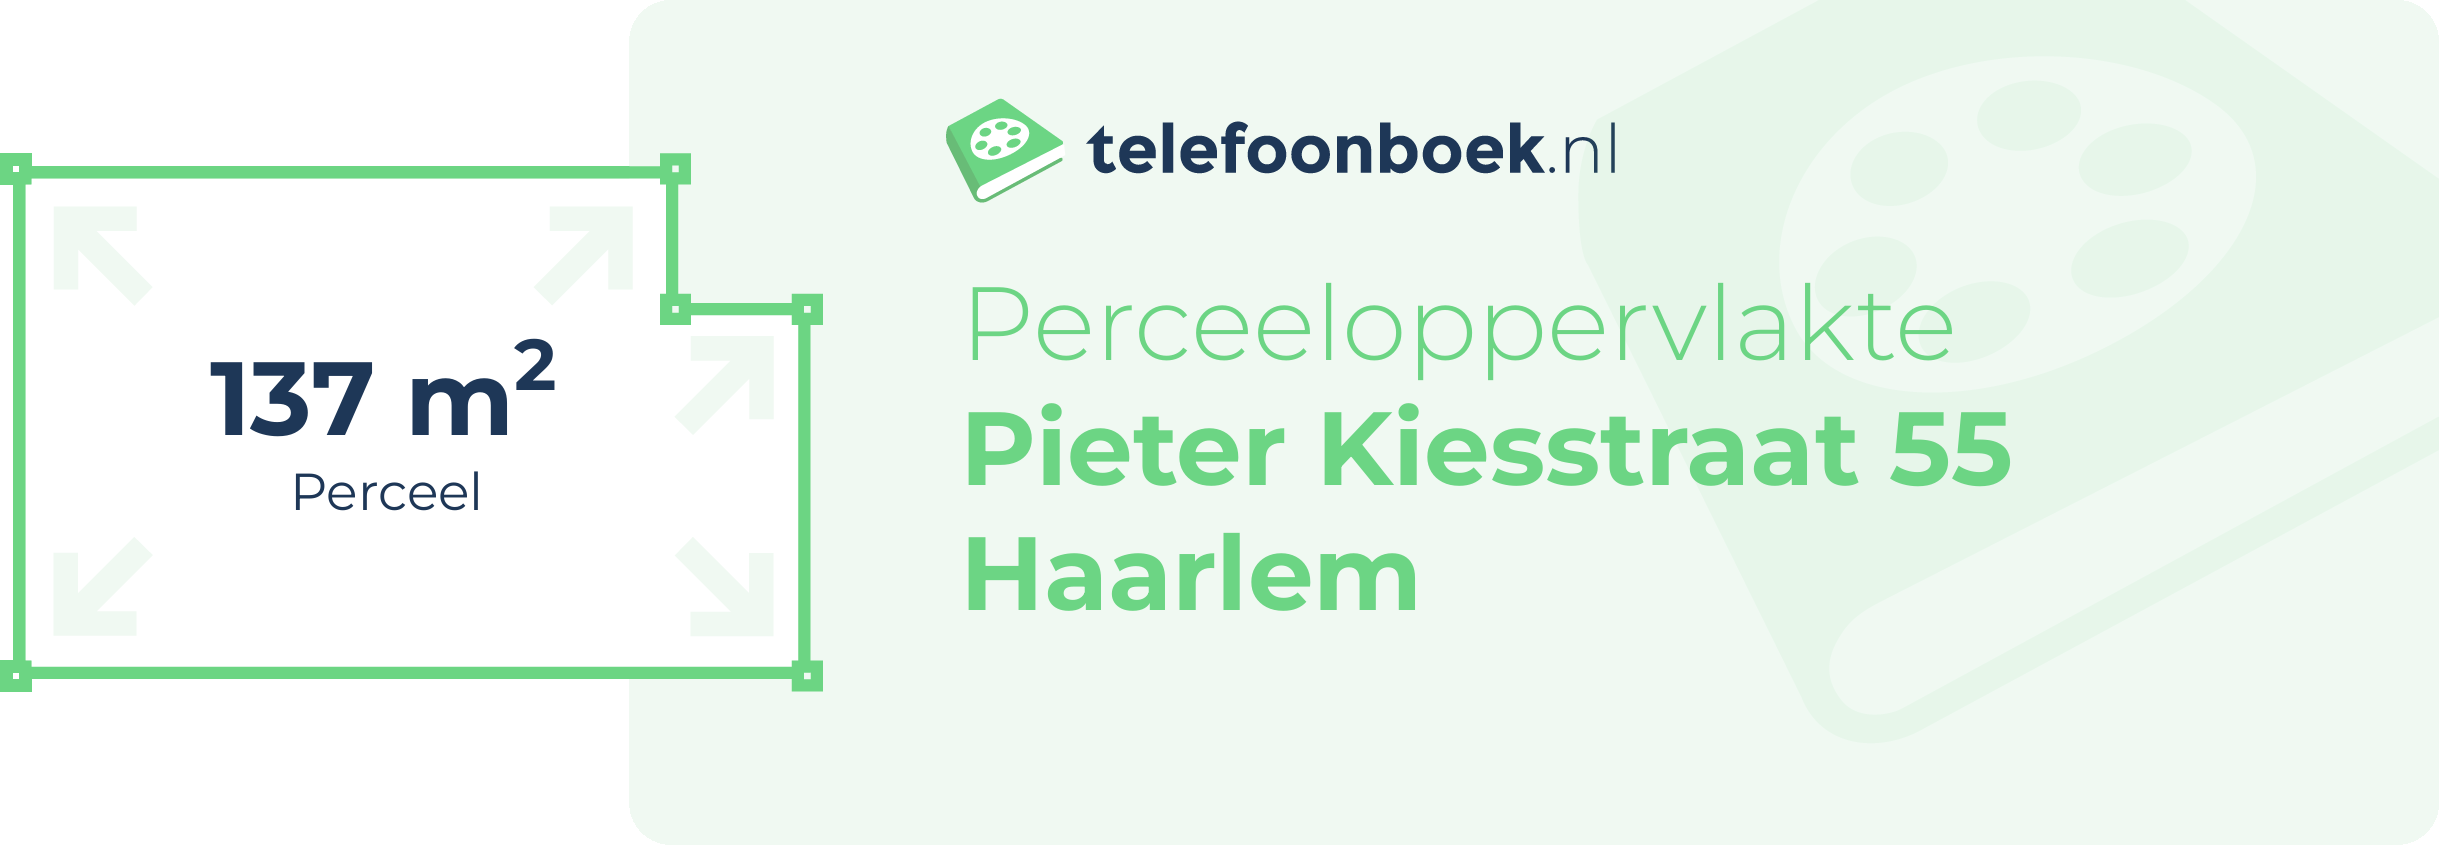 Perceeloppervlakte Pieter Kiesstraat 55 Haarlem